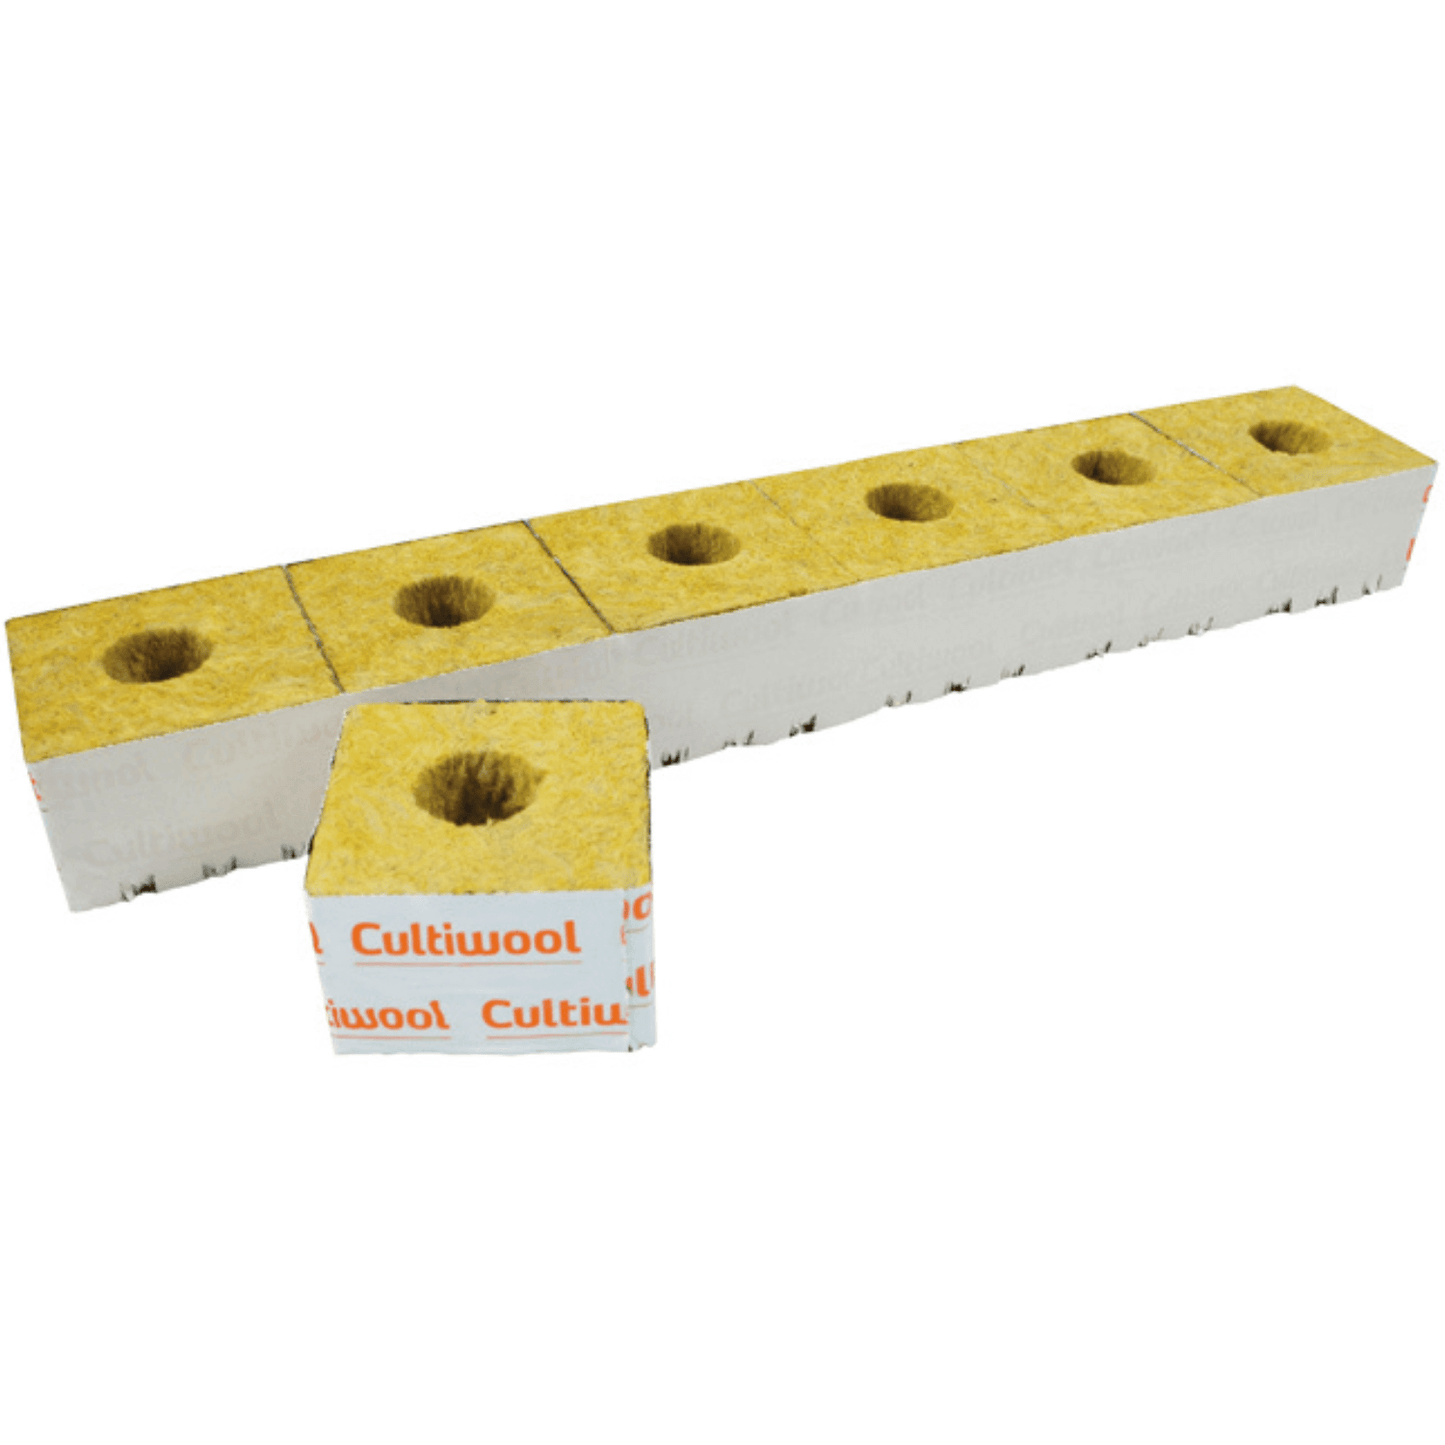 Cultiwool 4" x 4" x 2.5" Blocks of Cultilene Rockwool - Case of 216 CUL442 Planting & Watering